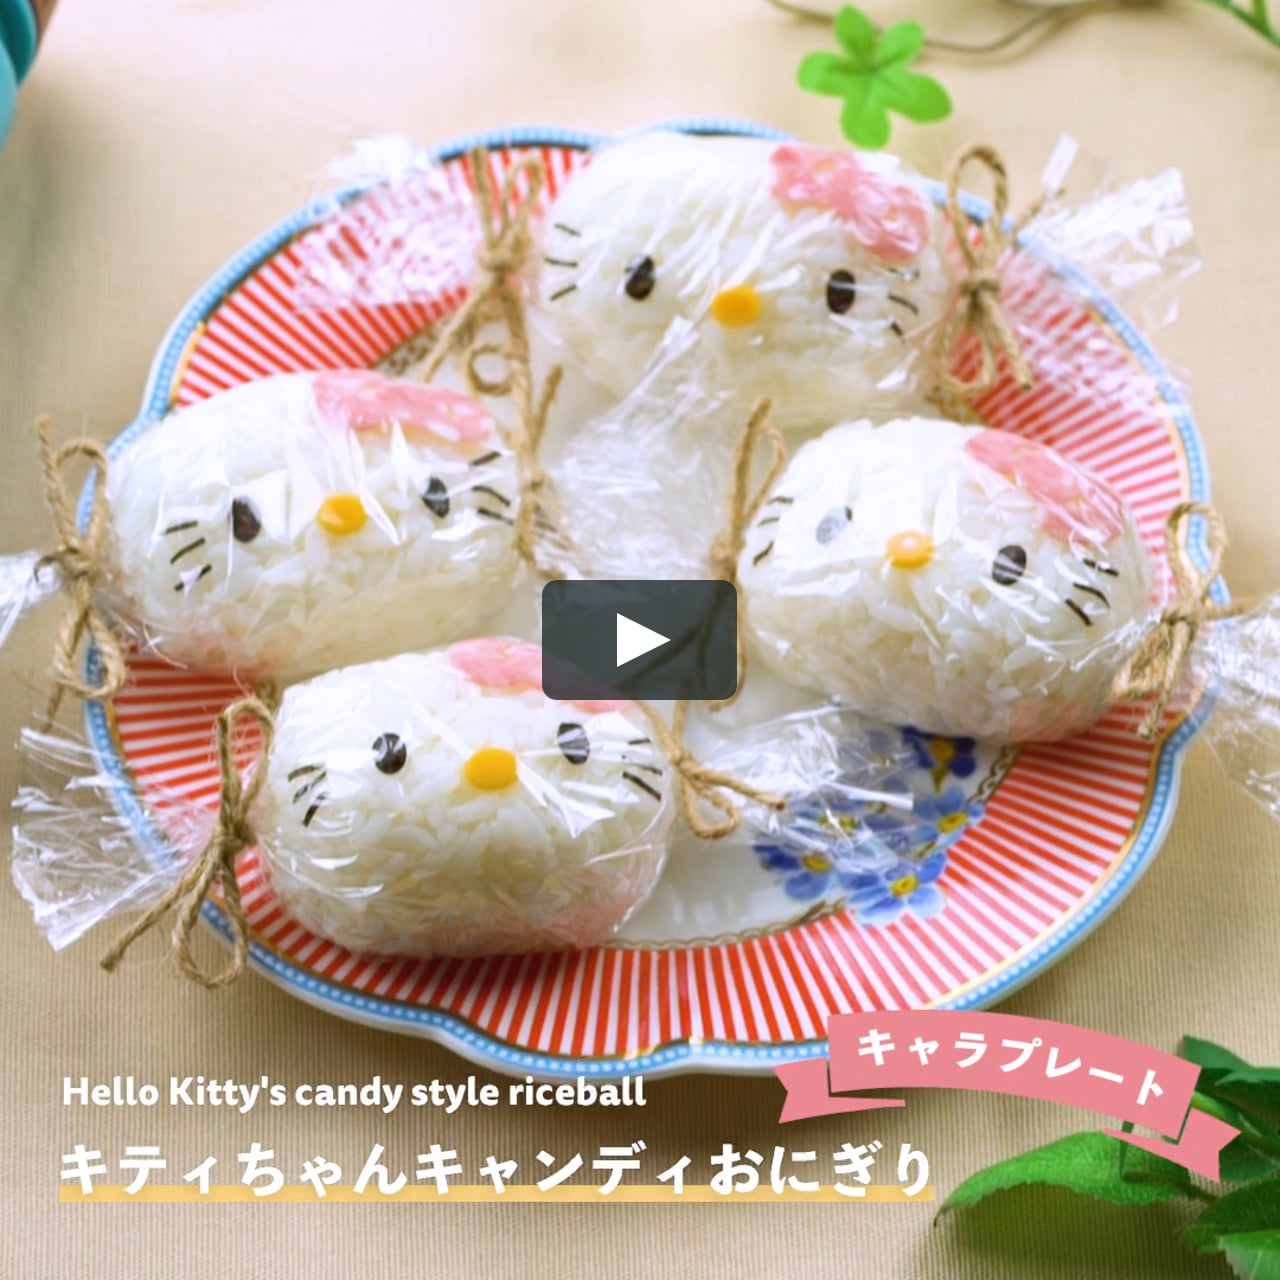 サンリオのキティちゃんのキャンディ風おにぎりプレート On Vimeo